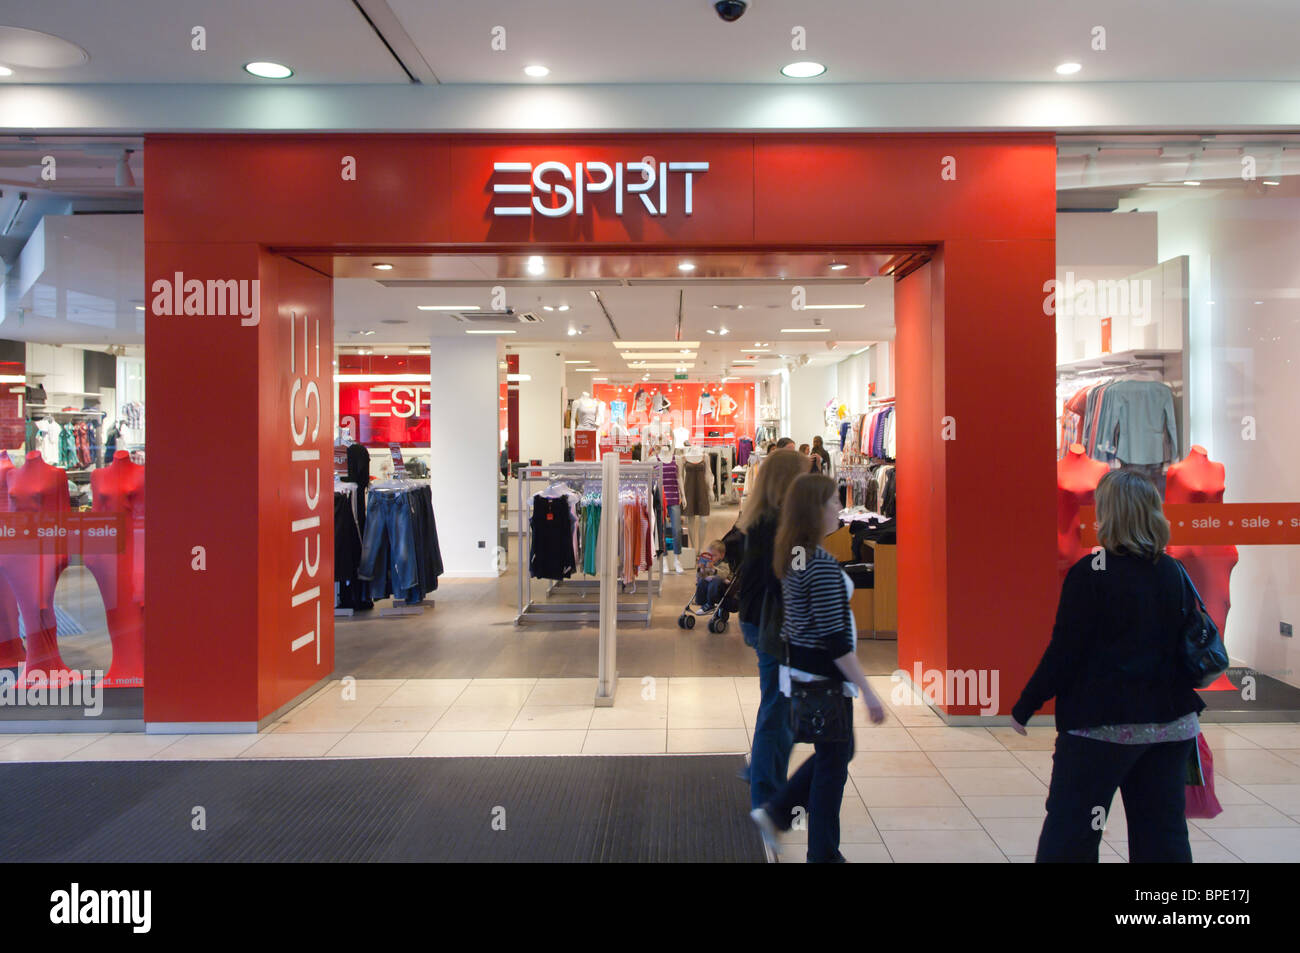 Esprit Kleidung Shop speichern in Chapelfields in Norwich, Norfolk,  England, Großbritannien, Uk Stockfotografie - Alamy